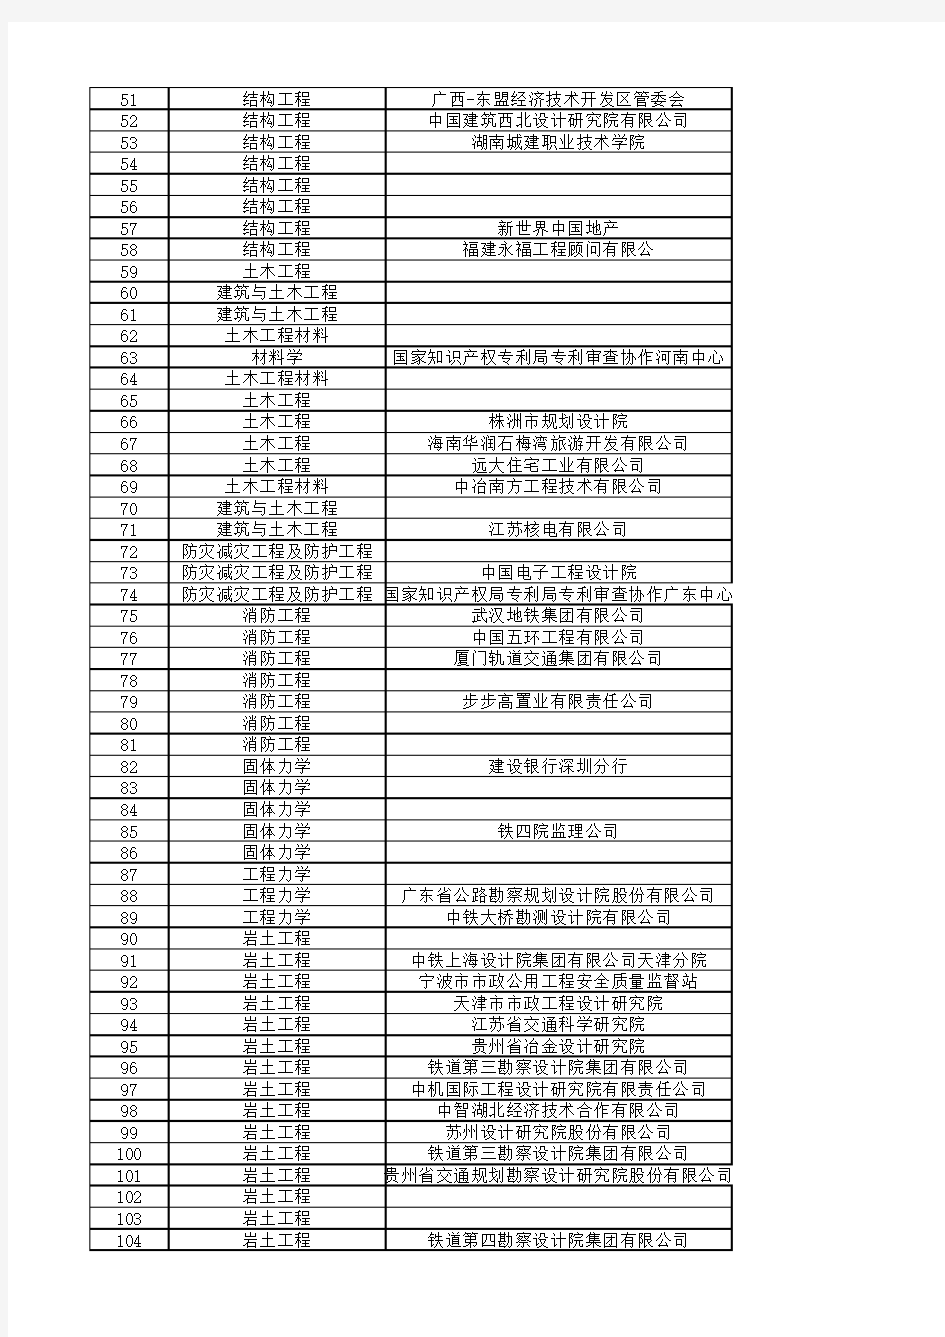 中南大学土木工程学院研究生就业信息统计表